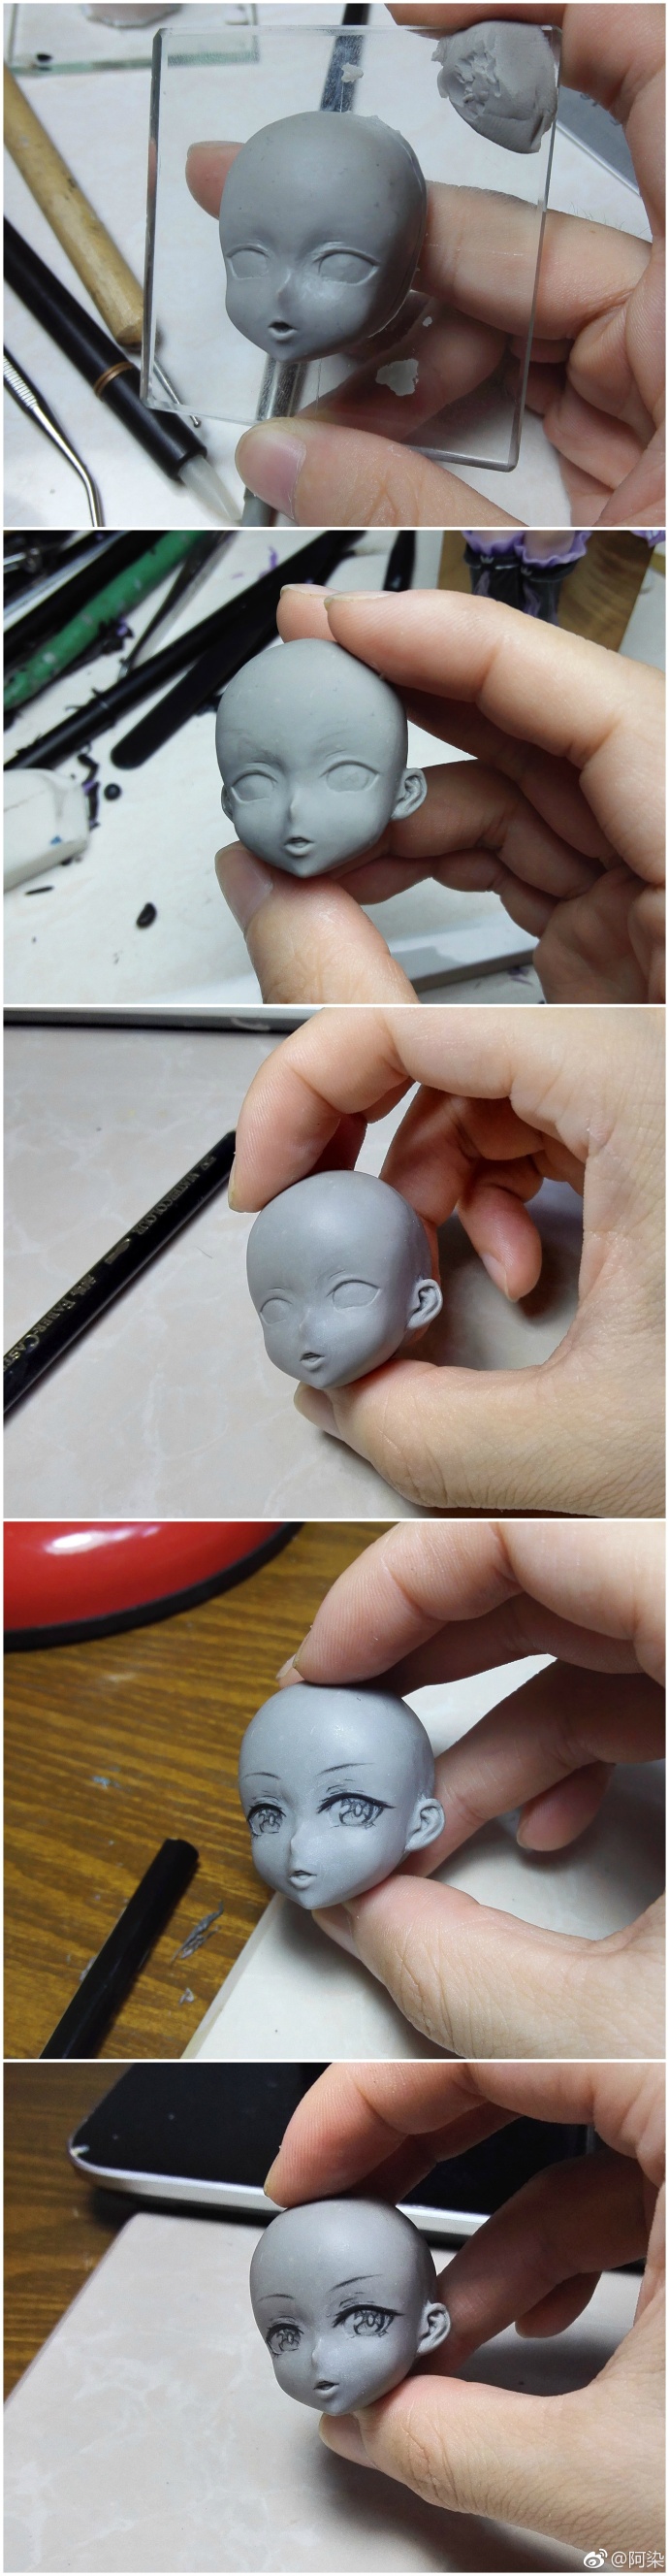 超牛的儿童粘土DIY 人偶脸部制作过程图片